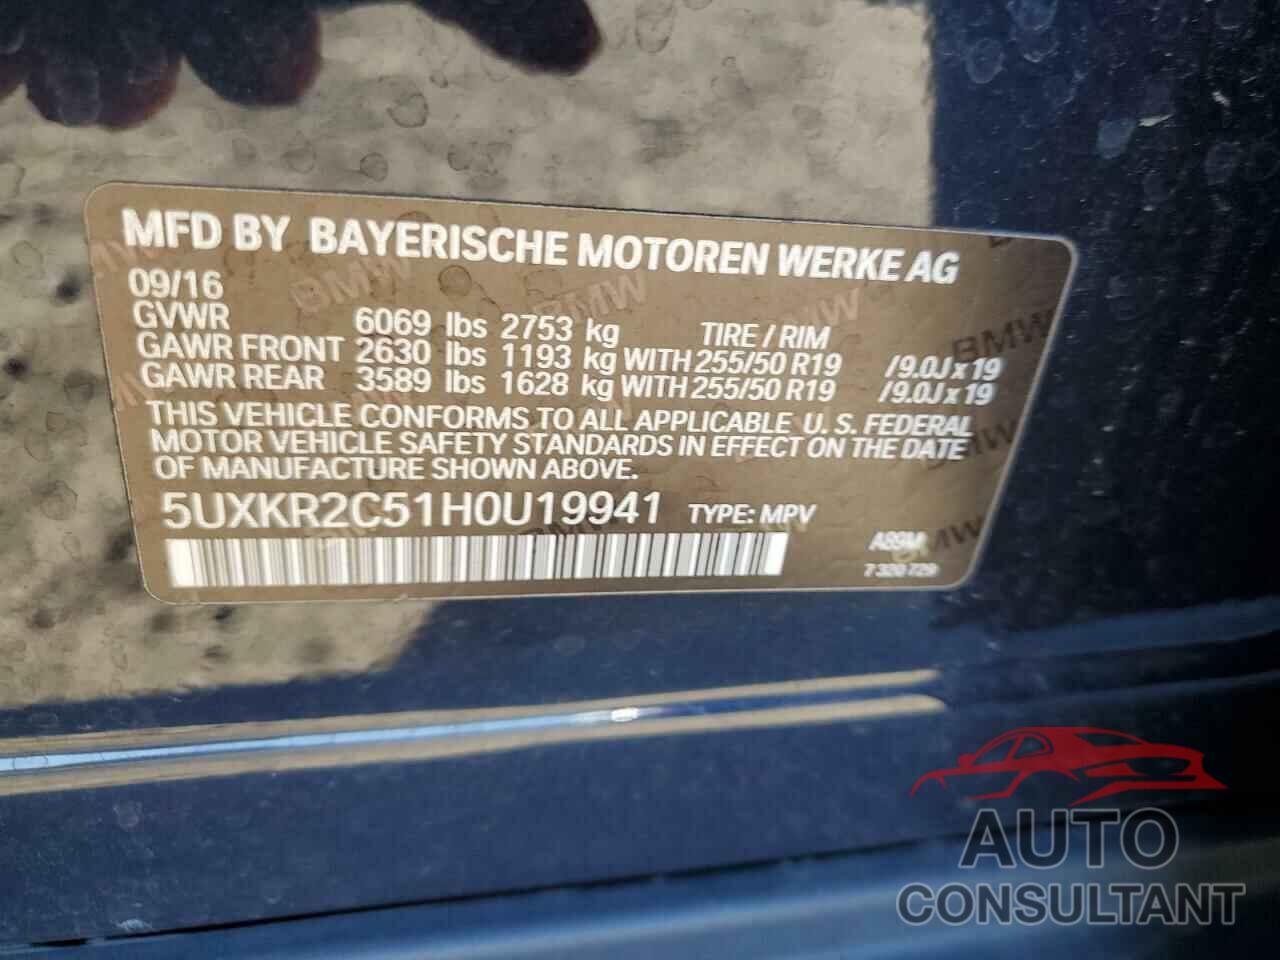 BMW X5 2017 - 5UXKR2C51H0U19941